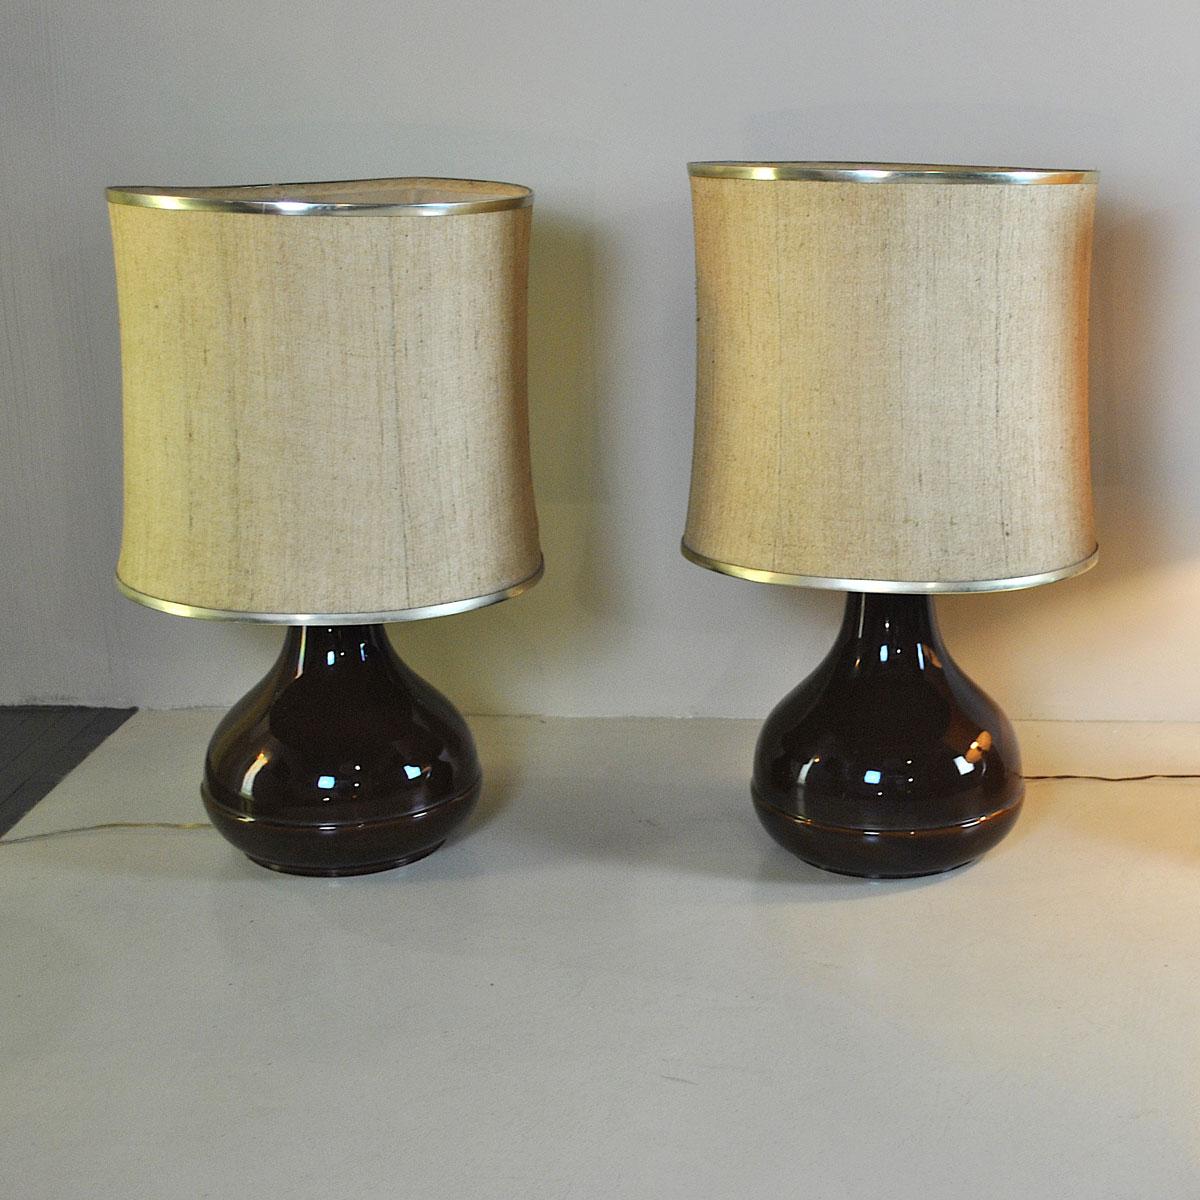 Ferlaro Keramik Tischlampe aus der Mitte des Jahrhunderts aus Italien, 1960er Jahre

Die Lampe wird ohne den Lampenschirm auf dem Bild verkauft, aber es kann in der Form, Größen und Farben nach Belieben mit einem zusätzlichen Preis angefordert